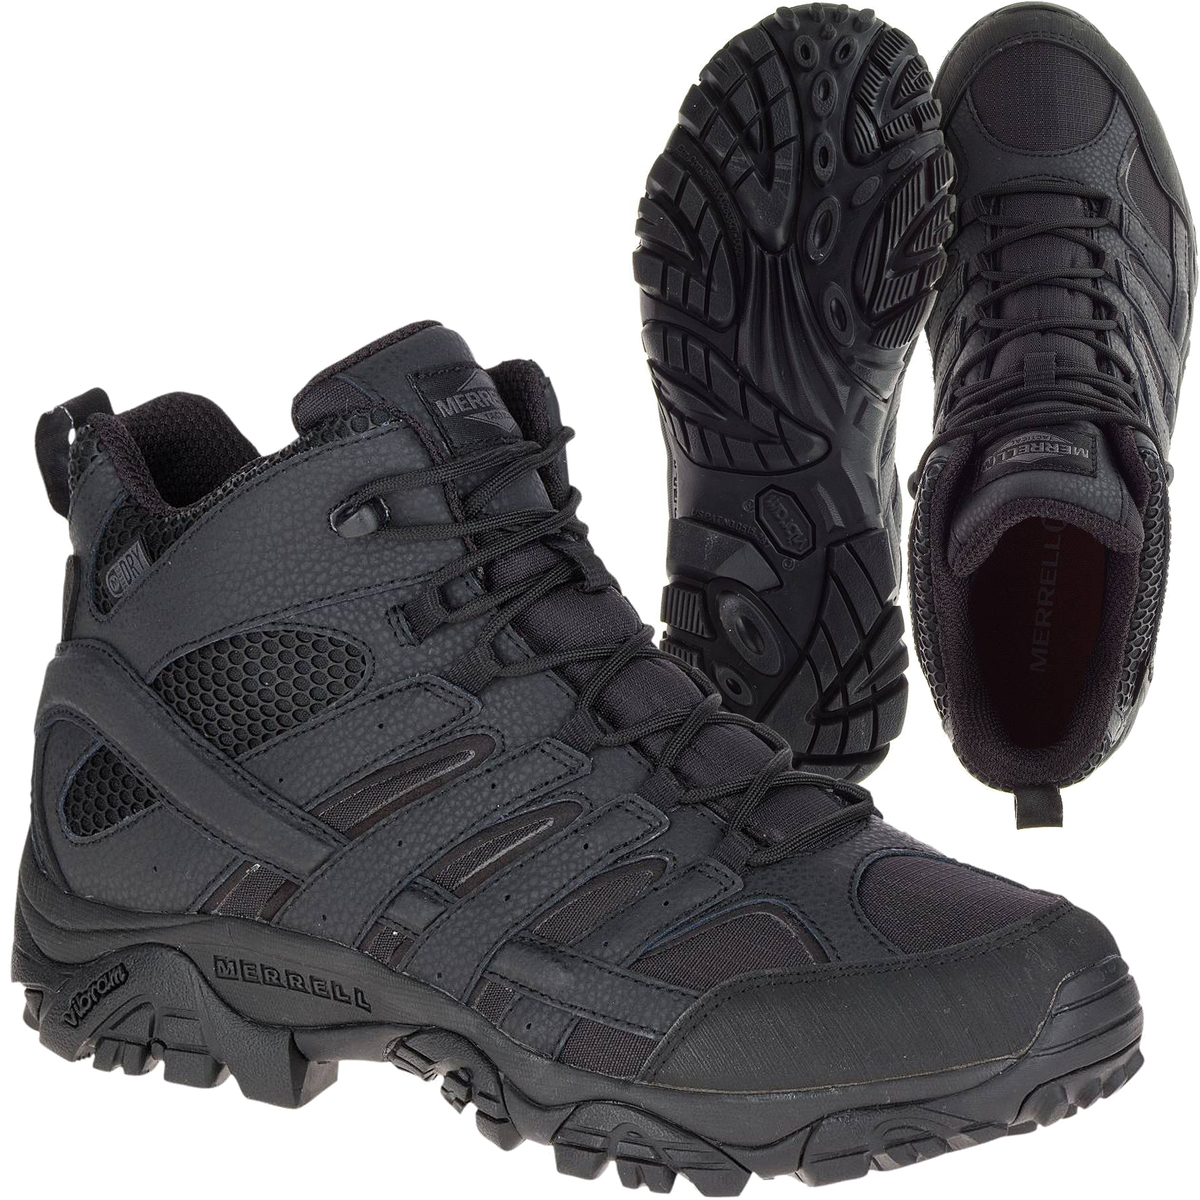 Outdoor Tactical | Merrell Tactical Moab 2 Mid Tactical WP Boots - Black